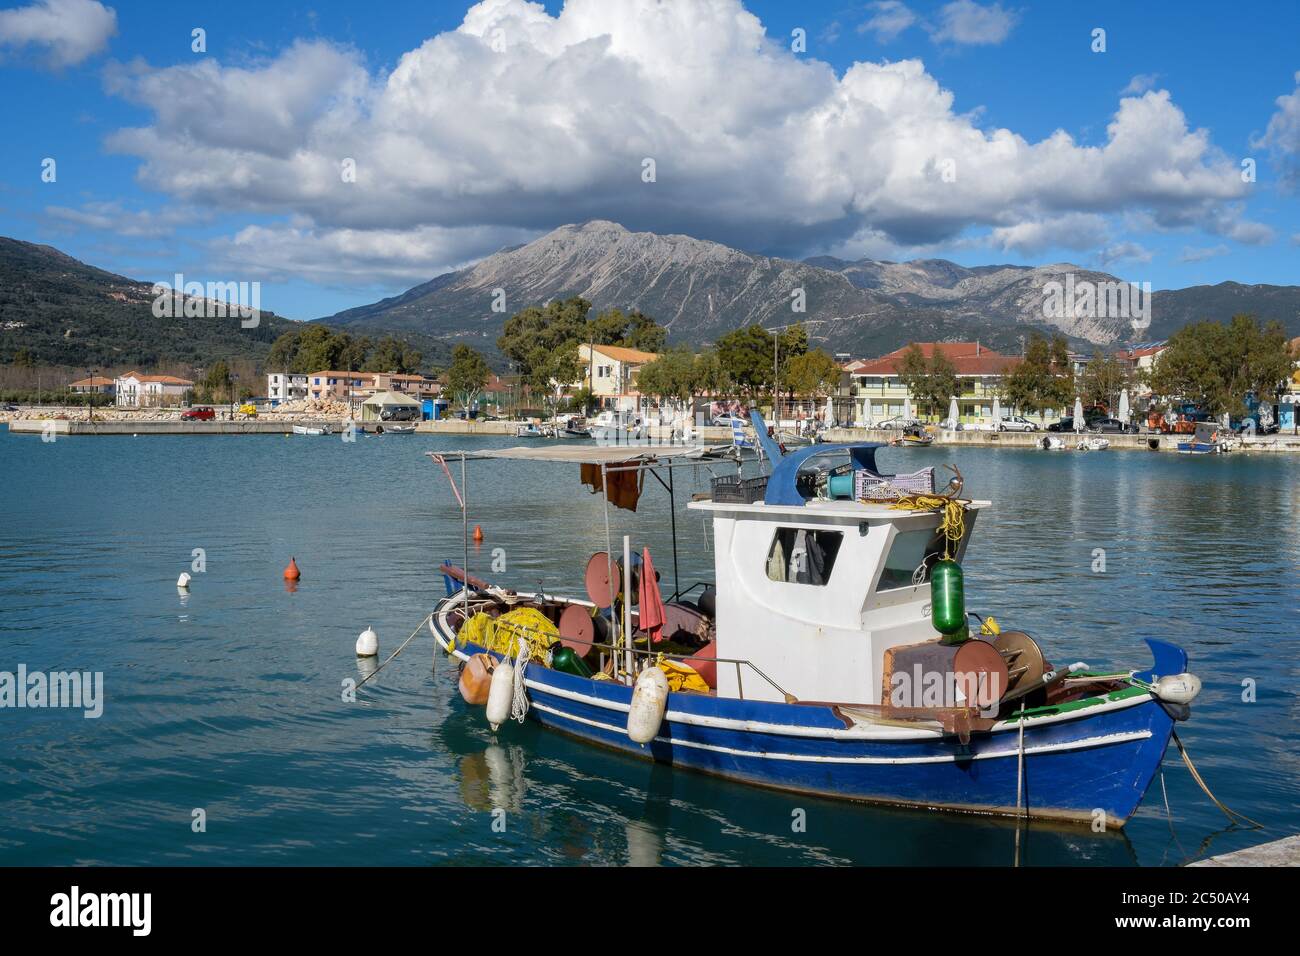 La località turistica di Vasiliki sull'isola di Lefkada che ha iniziato come un piccolo villaggio di pescatori. Foto Stock